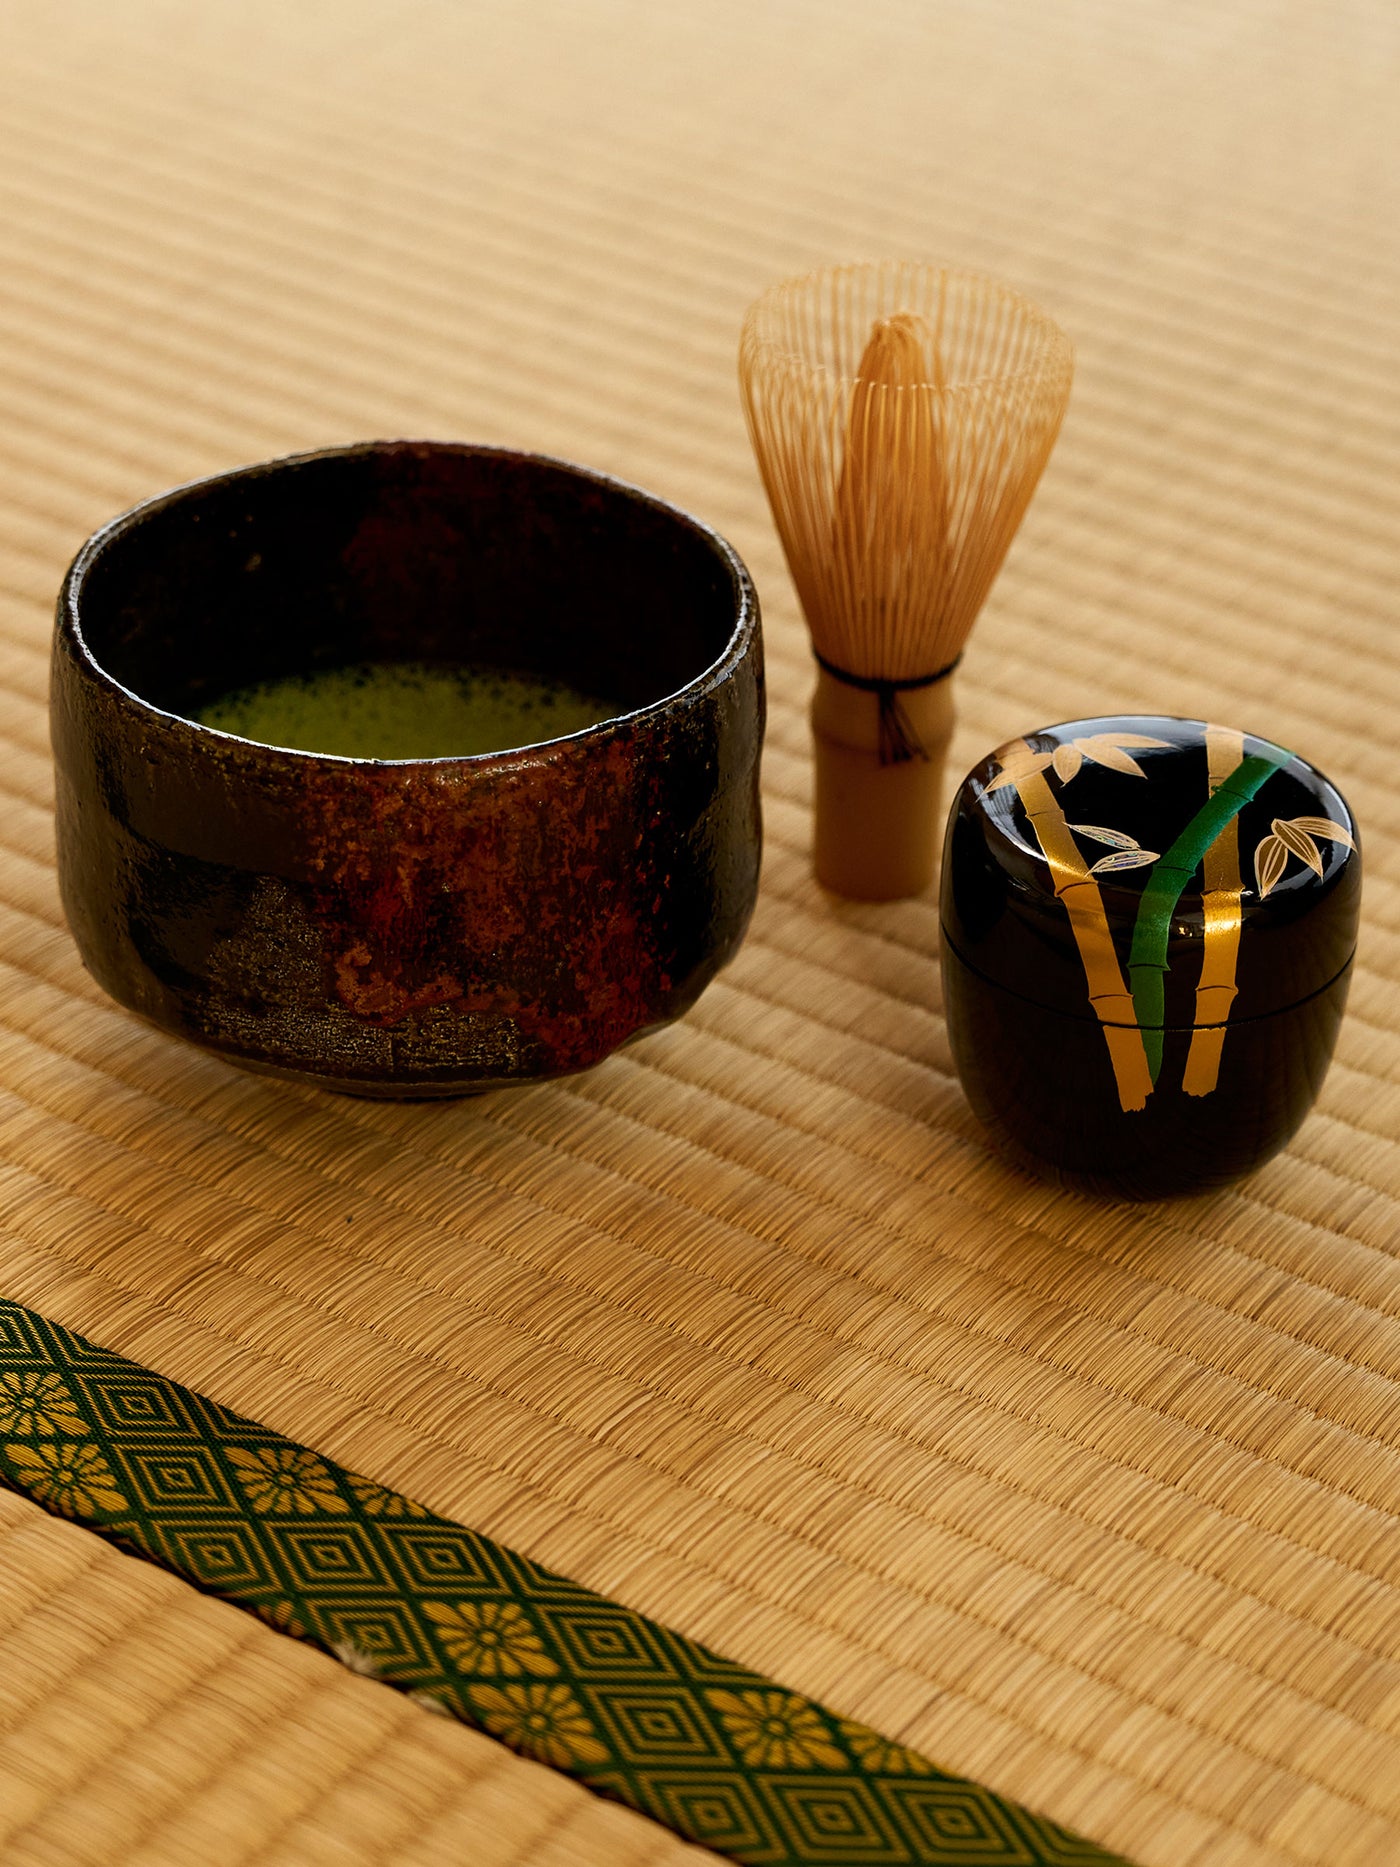 Black Raku Pottery Chawan Matcha Bowl by Shuraku